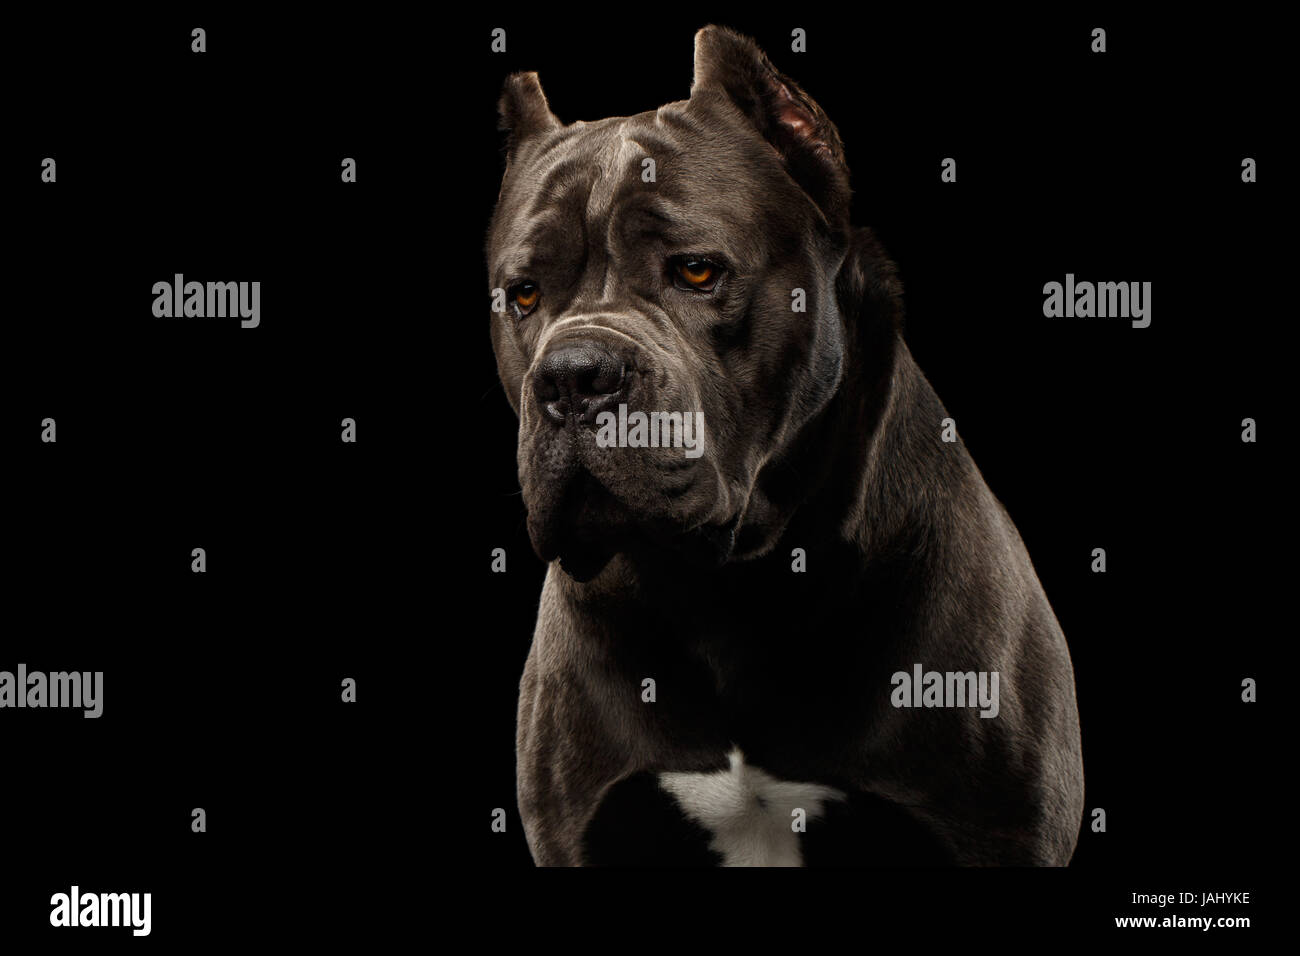 Retrato de triste caña marrón perro corso, Foto de estudio aislado sobre fondo negro Foto de stock